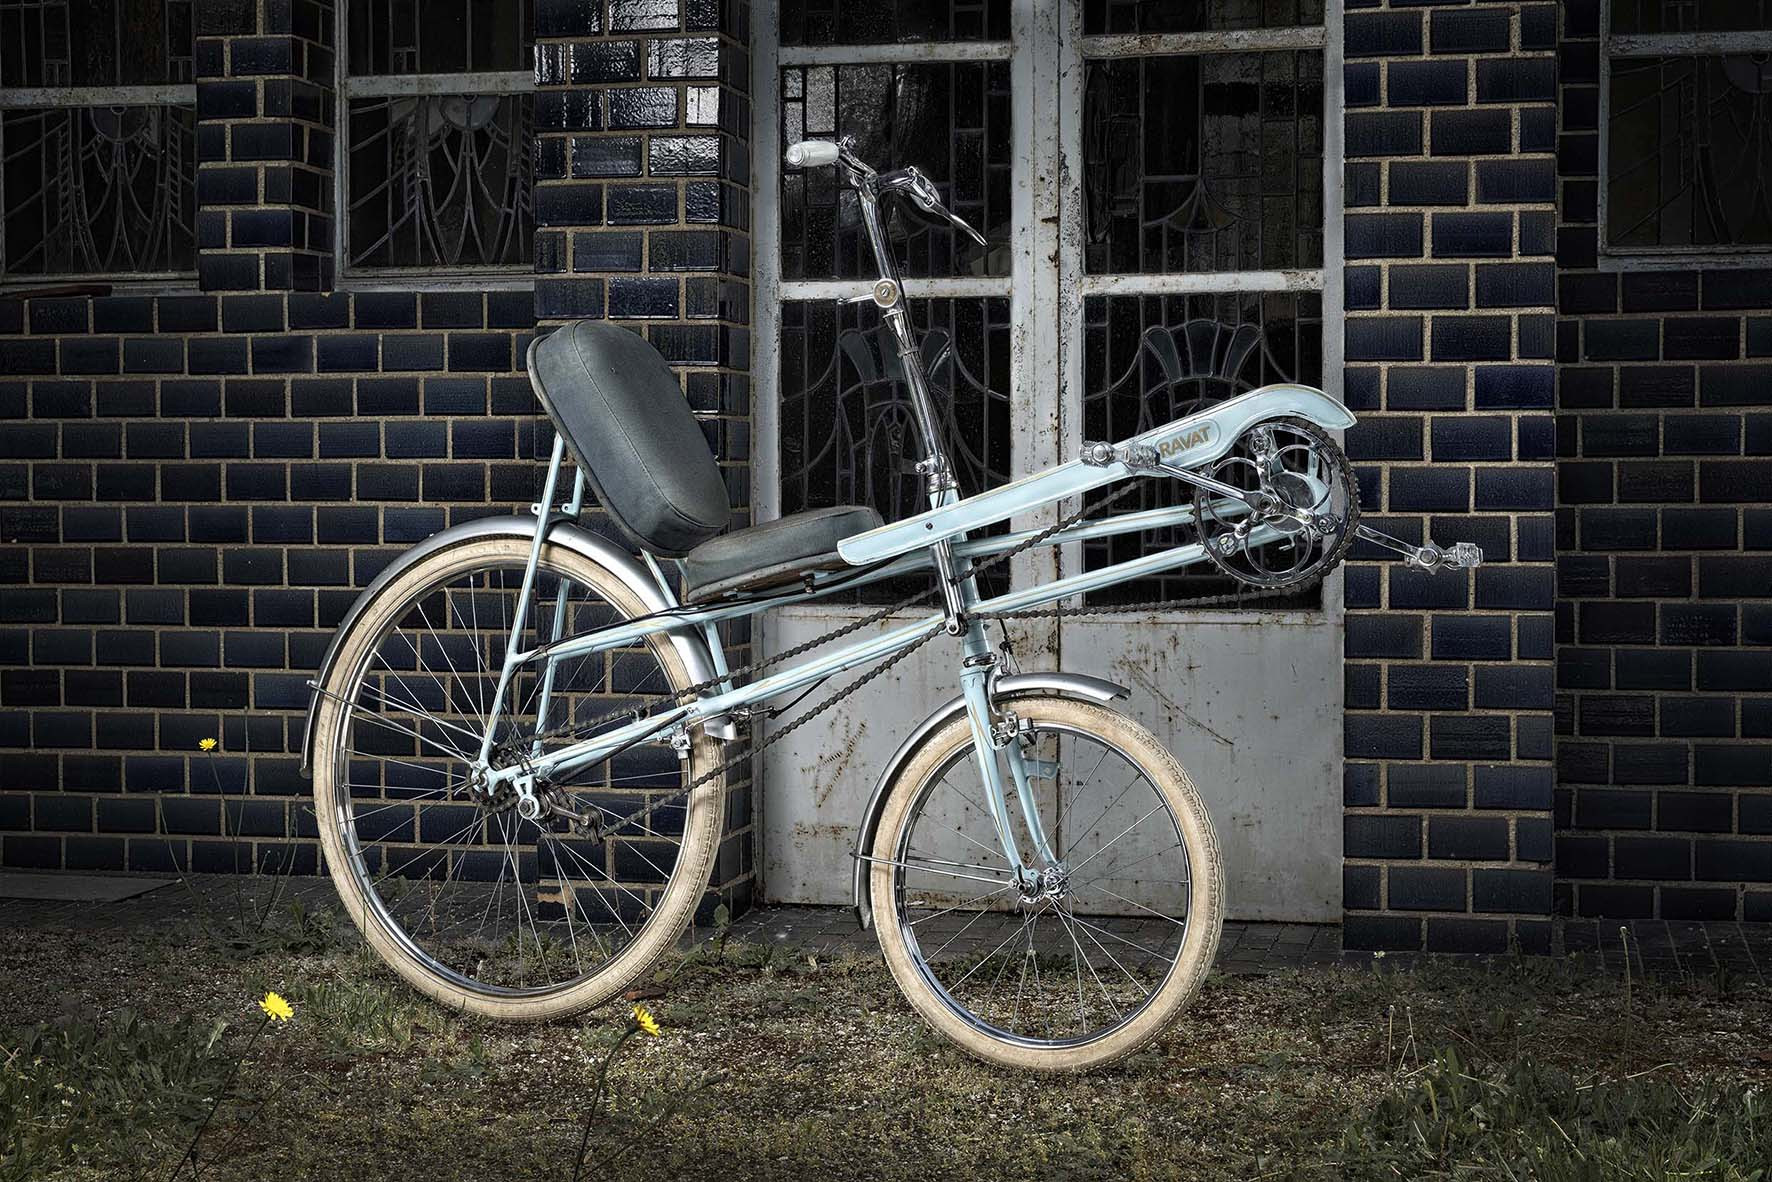 Sesselrad, auch Kurzlieger genannt, mit größerem Hinterrad und kleinerem Vorderrad